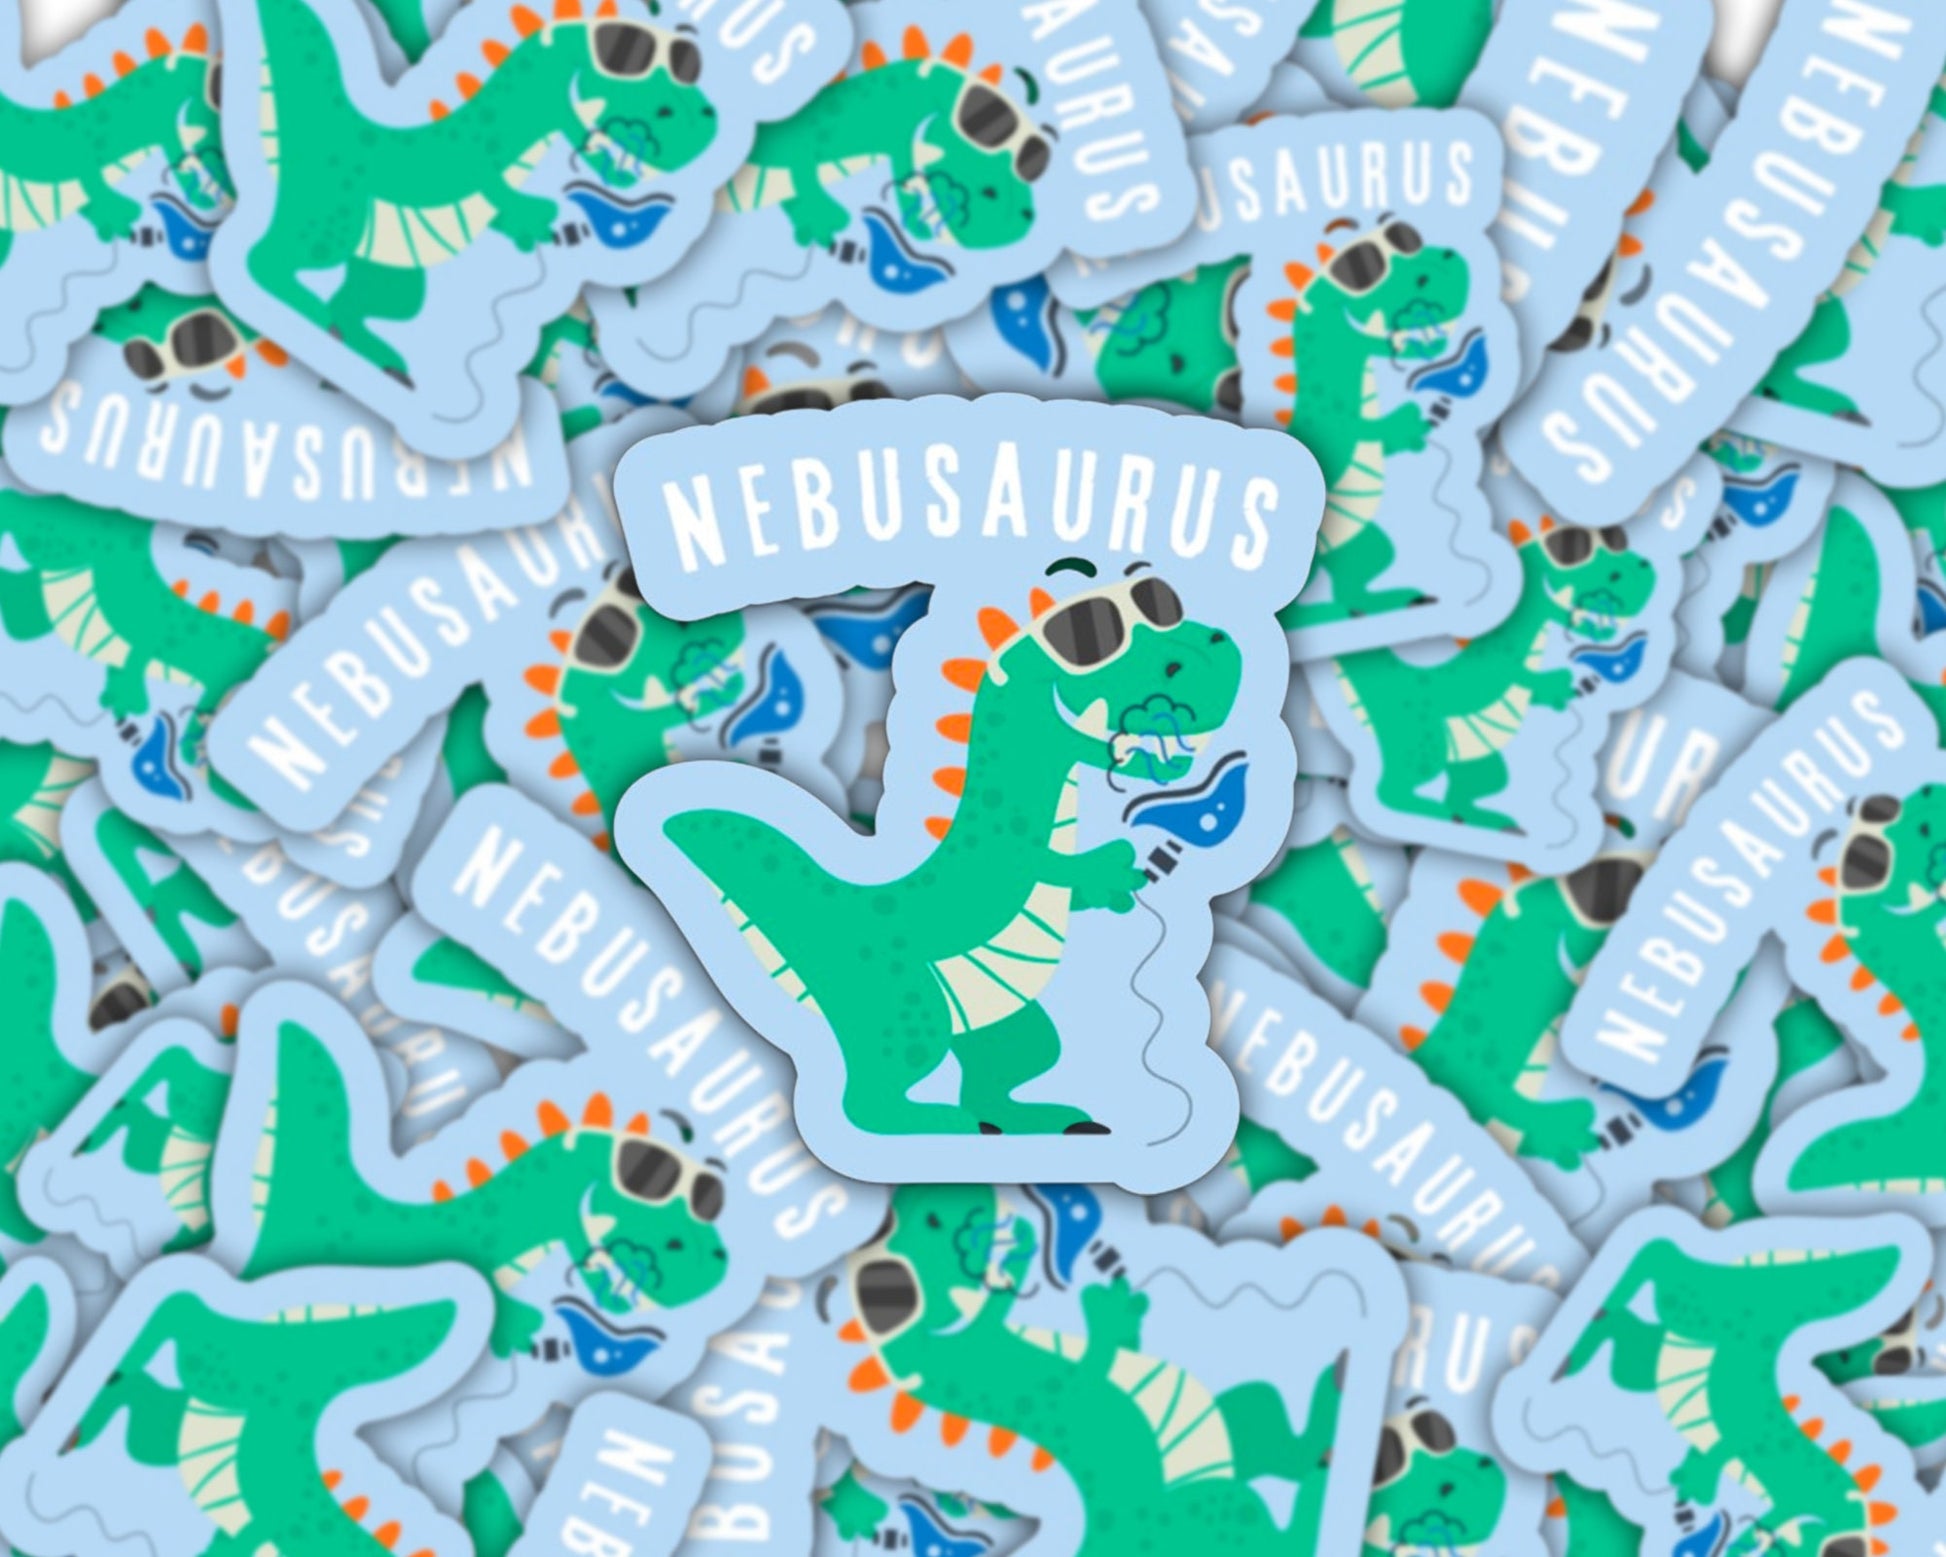 nebusaurus sticker, picu rt sticker, peds respiratory, peds dinosaur, respiratory therapist sticker, picu respiratory